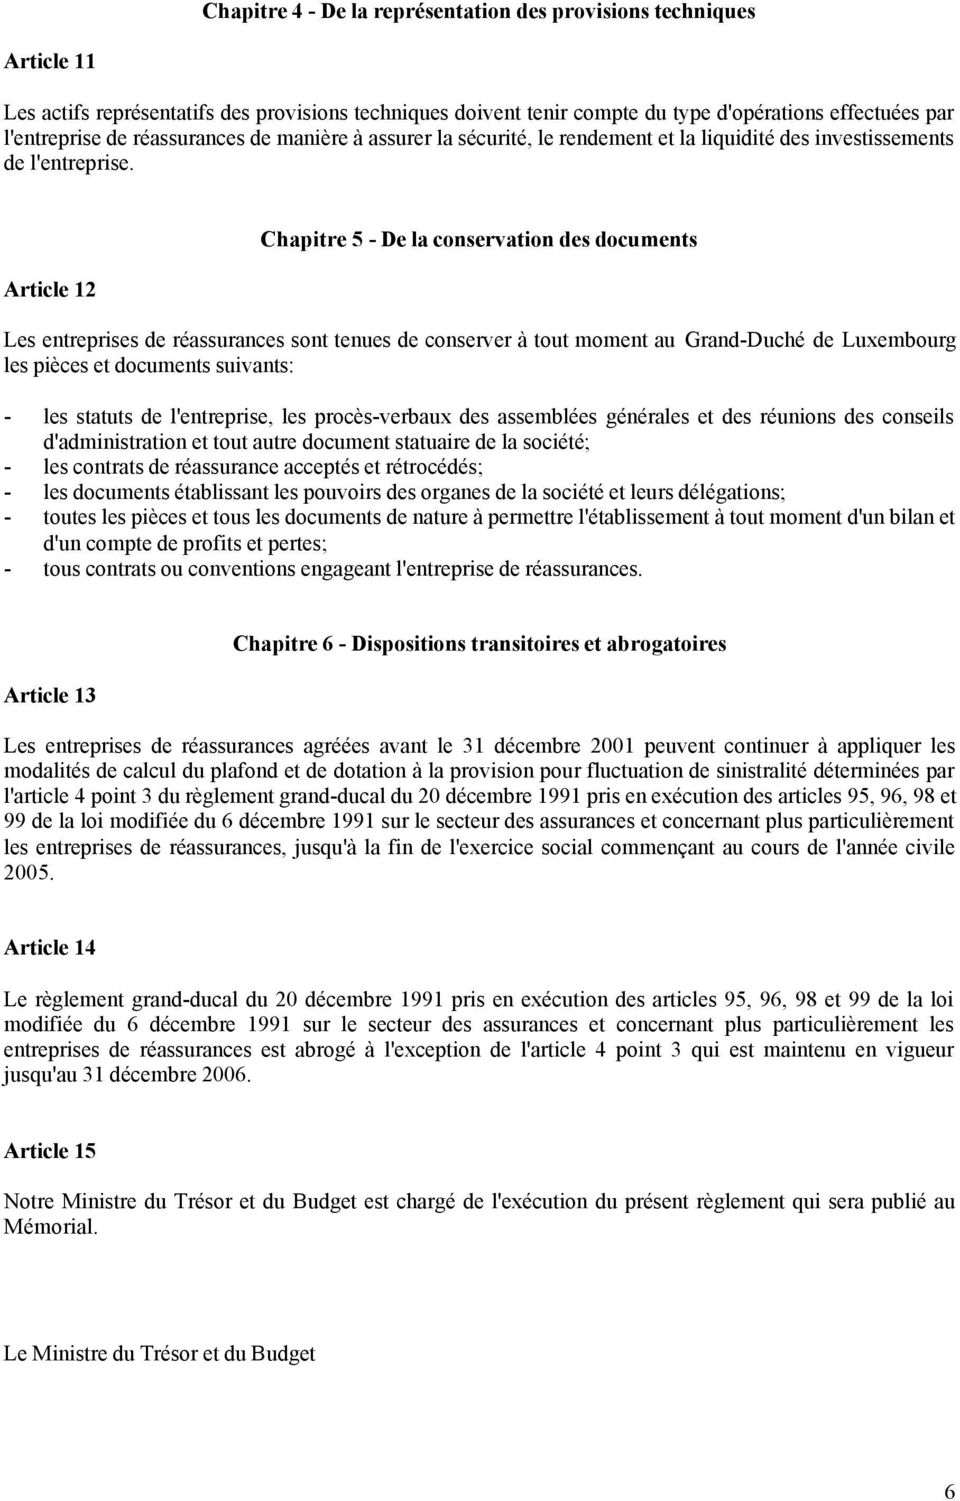 Article 12 Chapitre 5 - De la conservation des documents Les entreprises de réassurances sont tenues de conserver à tout moment au Grand-Duché de Luxembourg les pièces et documents suivants: - les